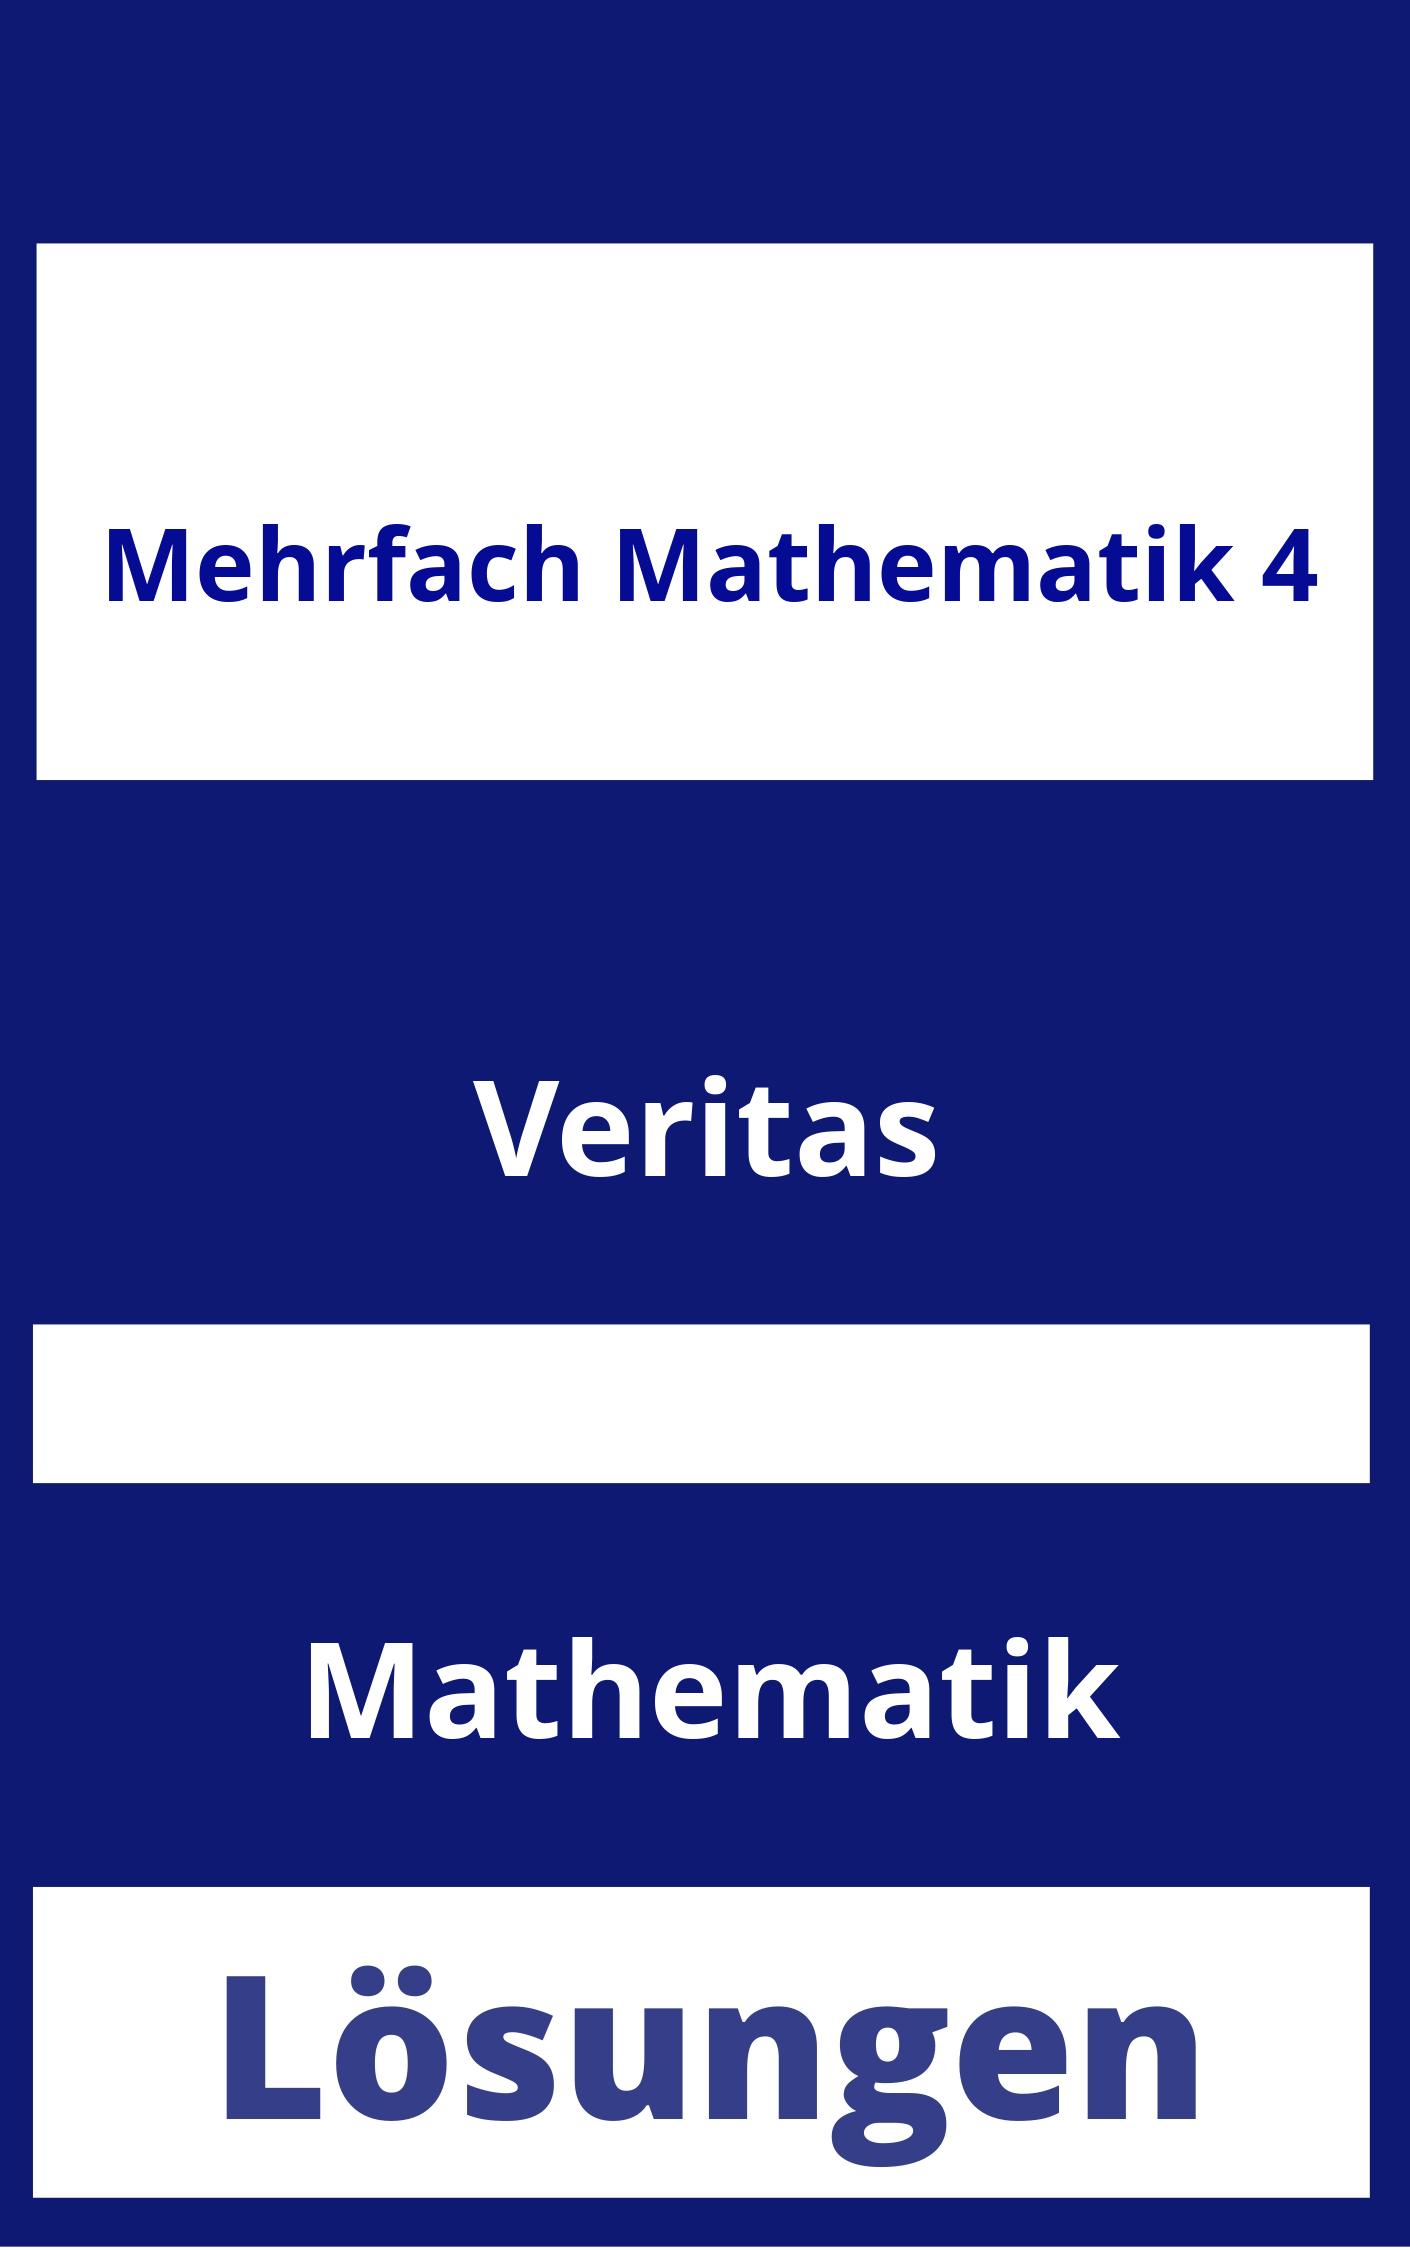 MEHRfach Mathematik 4